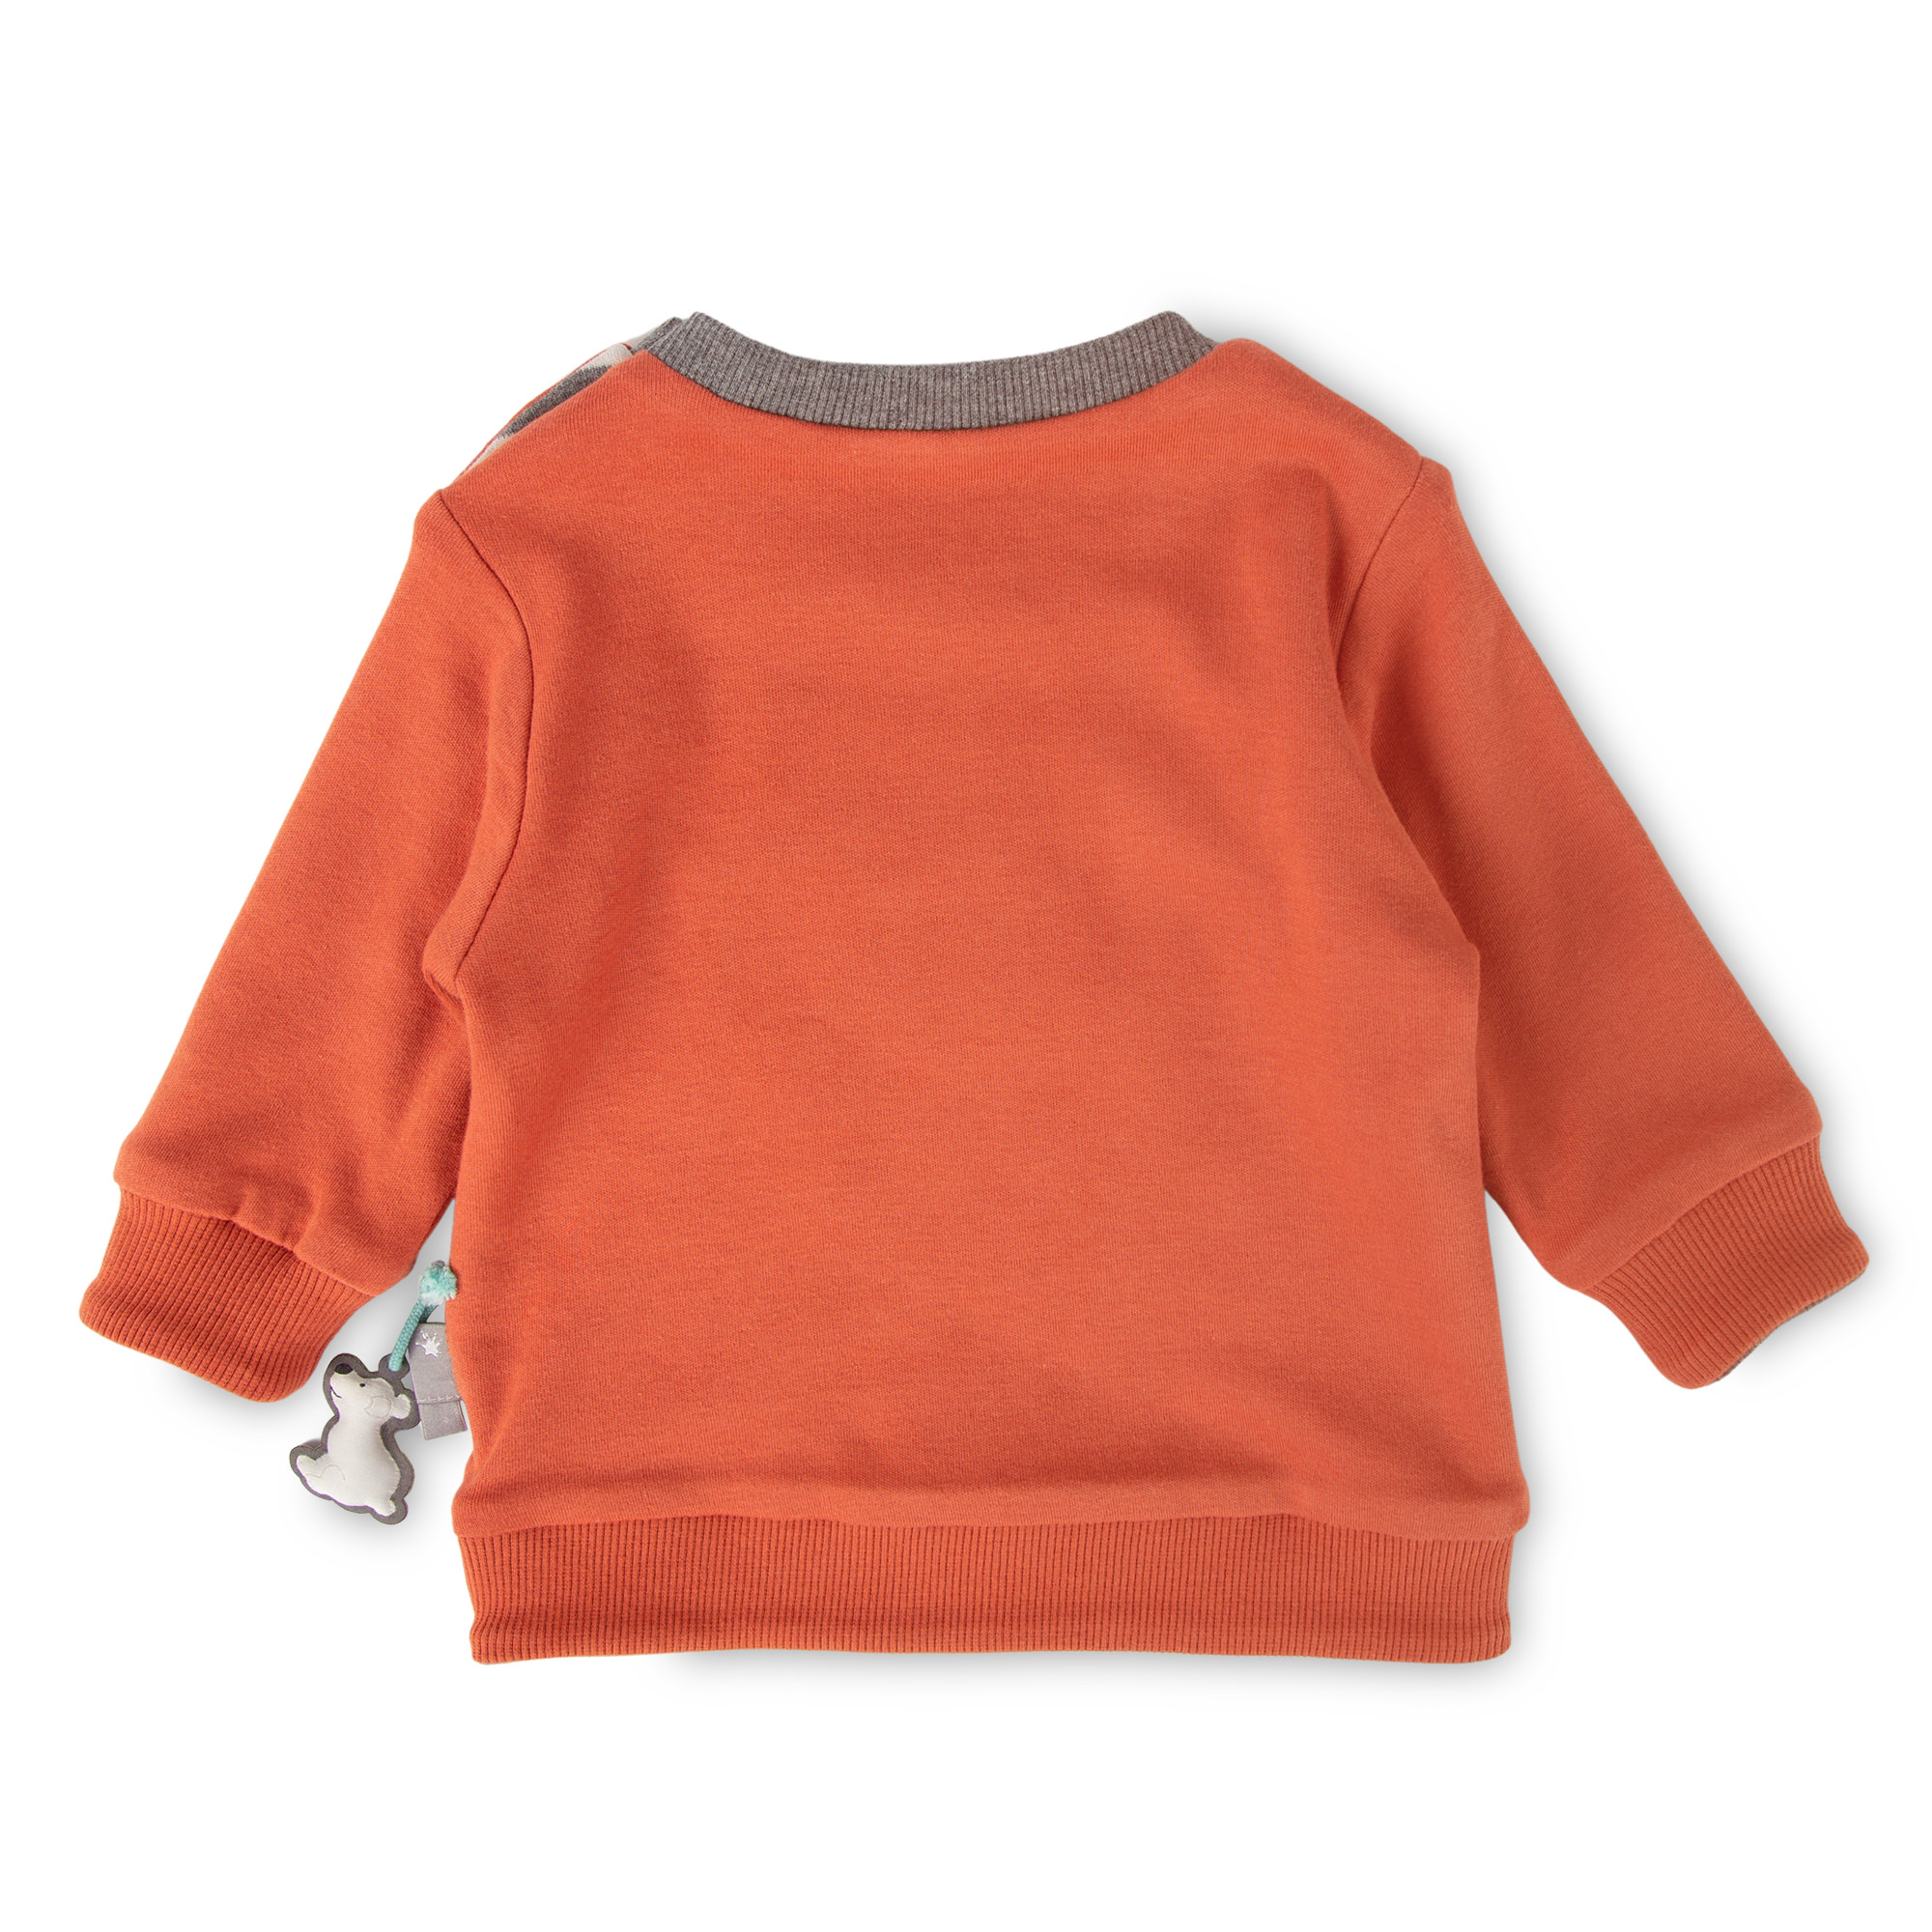 Baby Wendeshirt orange oder grau geringelt